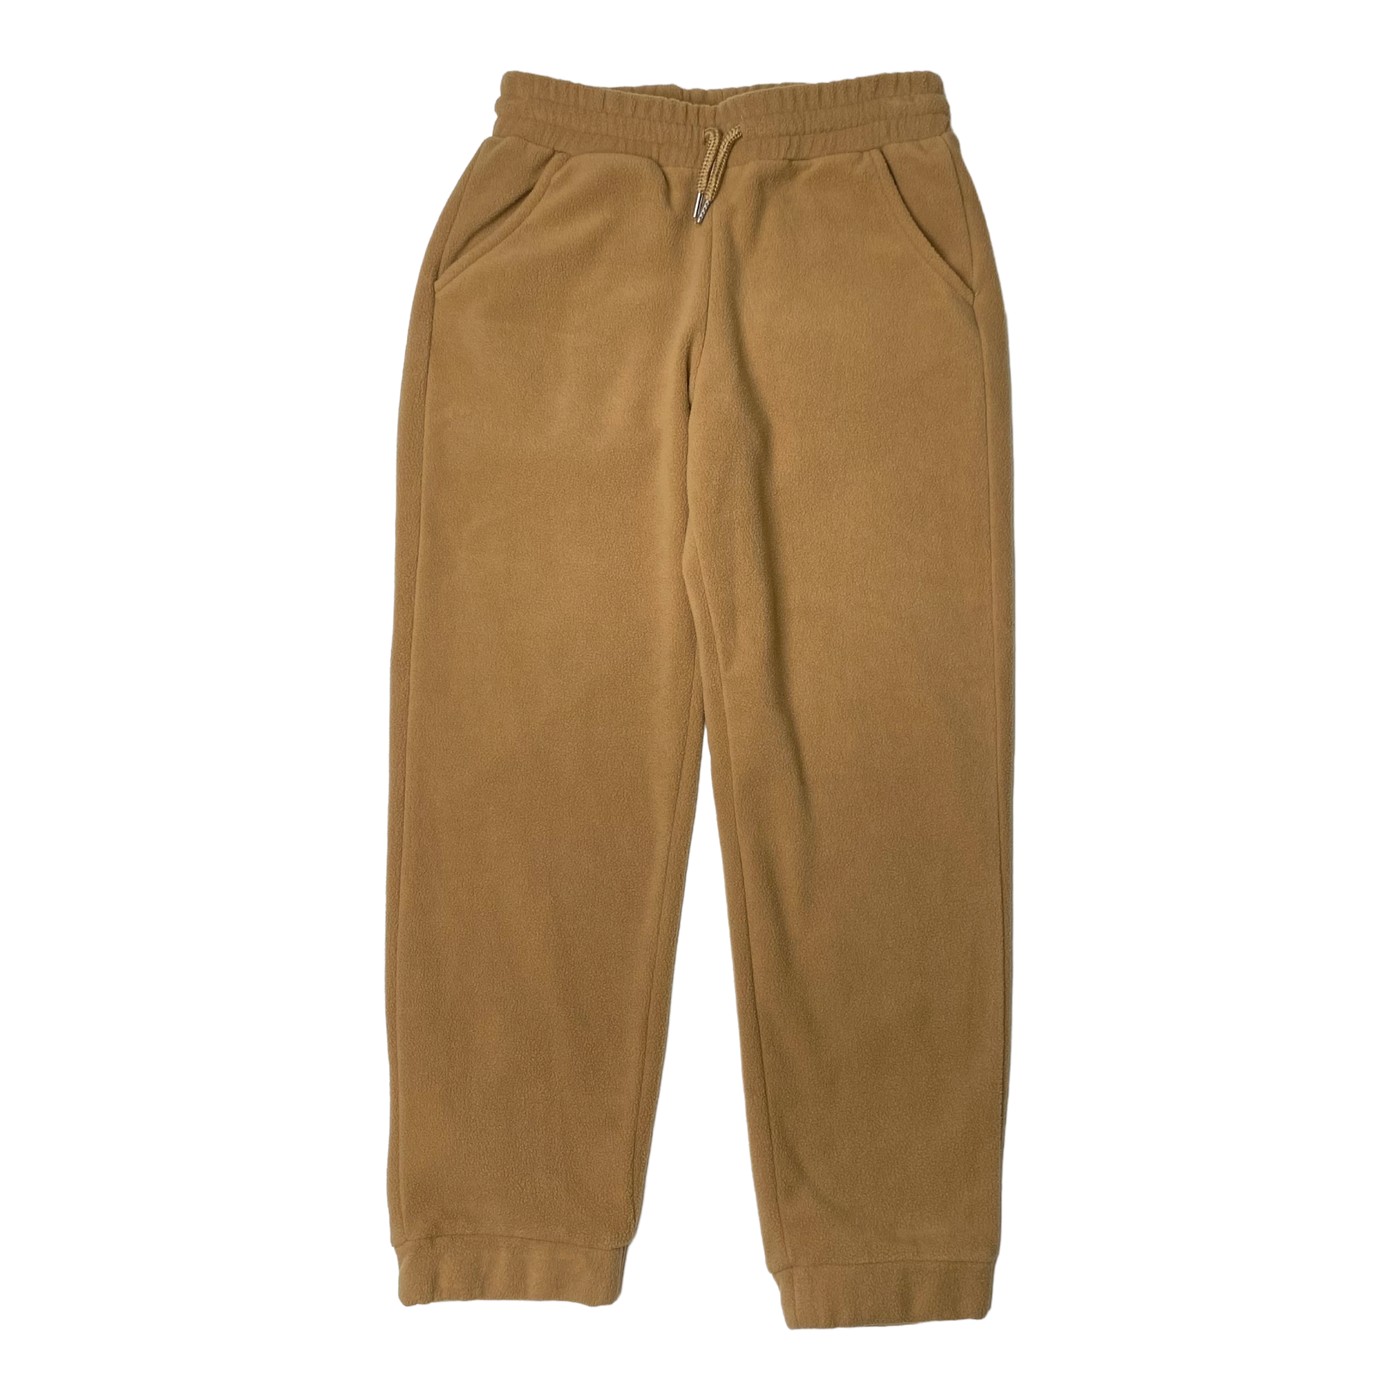 Mini Rodini fleece pants, tan | 128/134cm